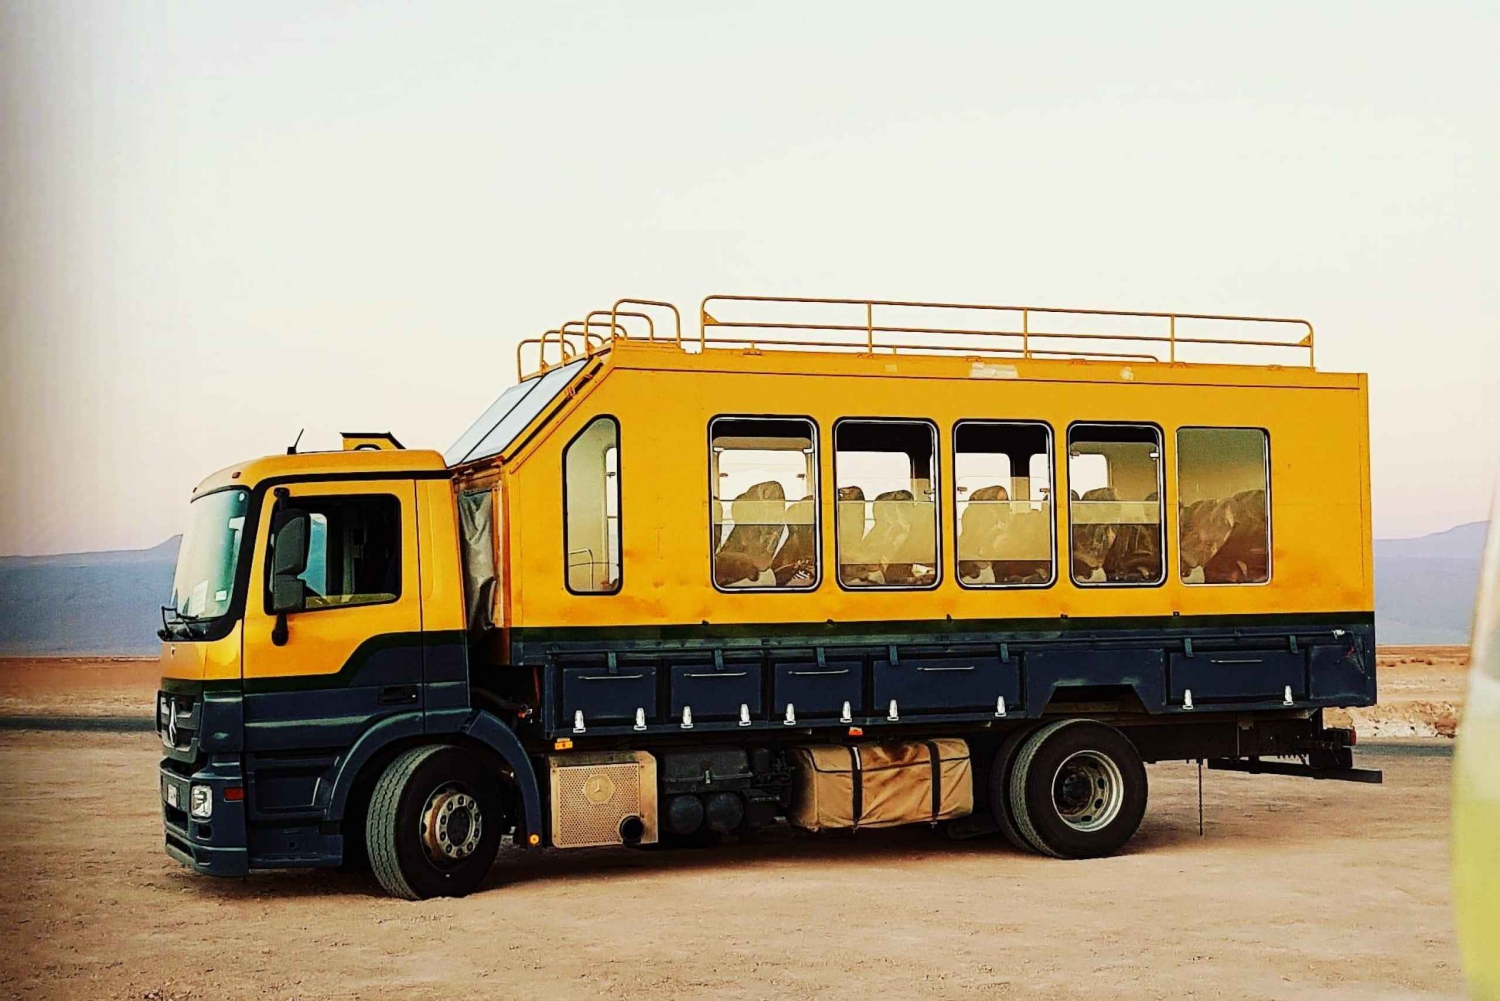 San Pedro de Atacama: Excursão ao Geyser Tatio em ônibus safári